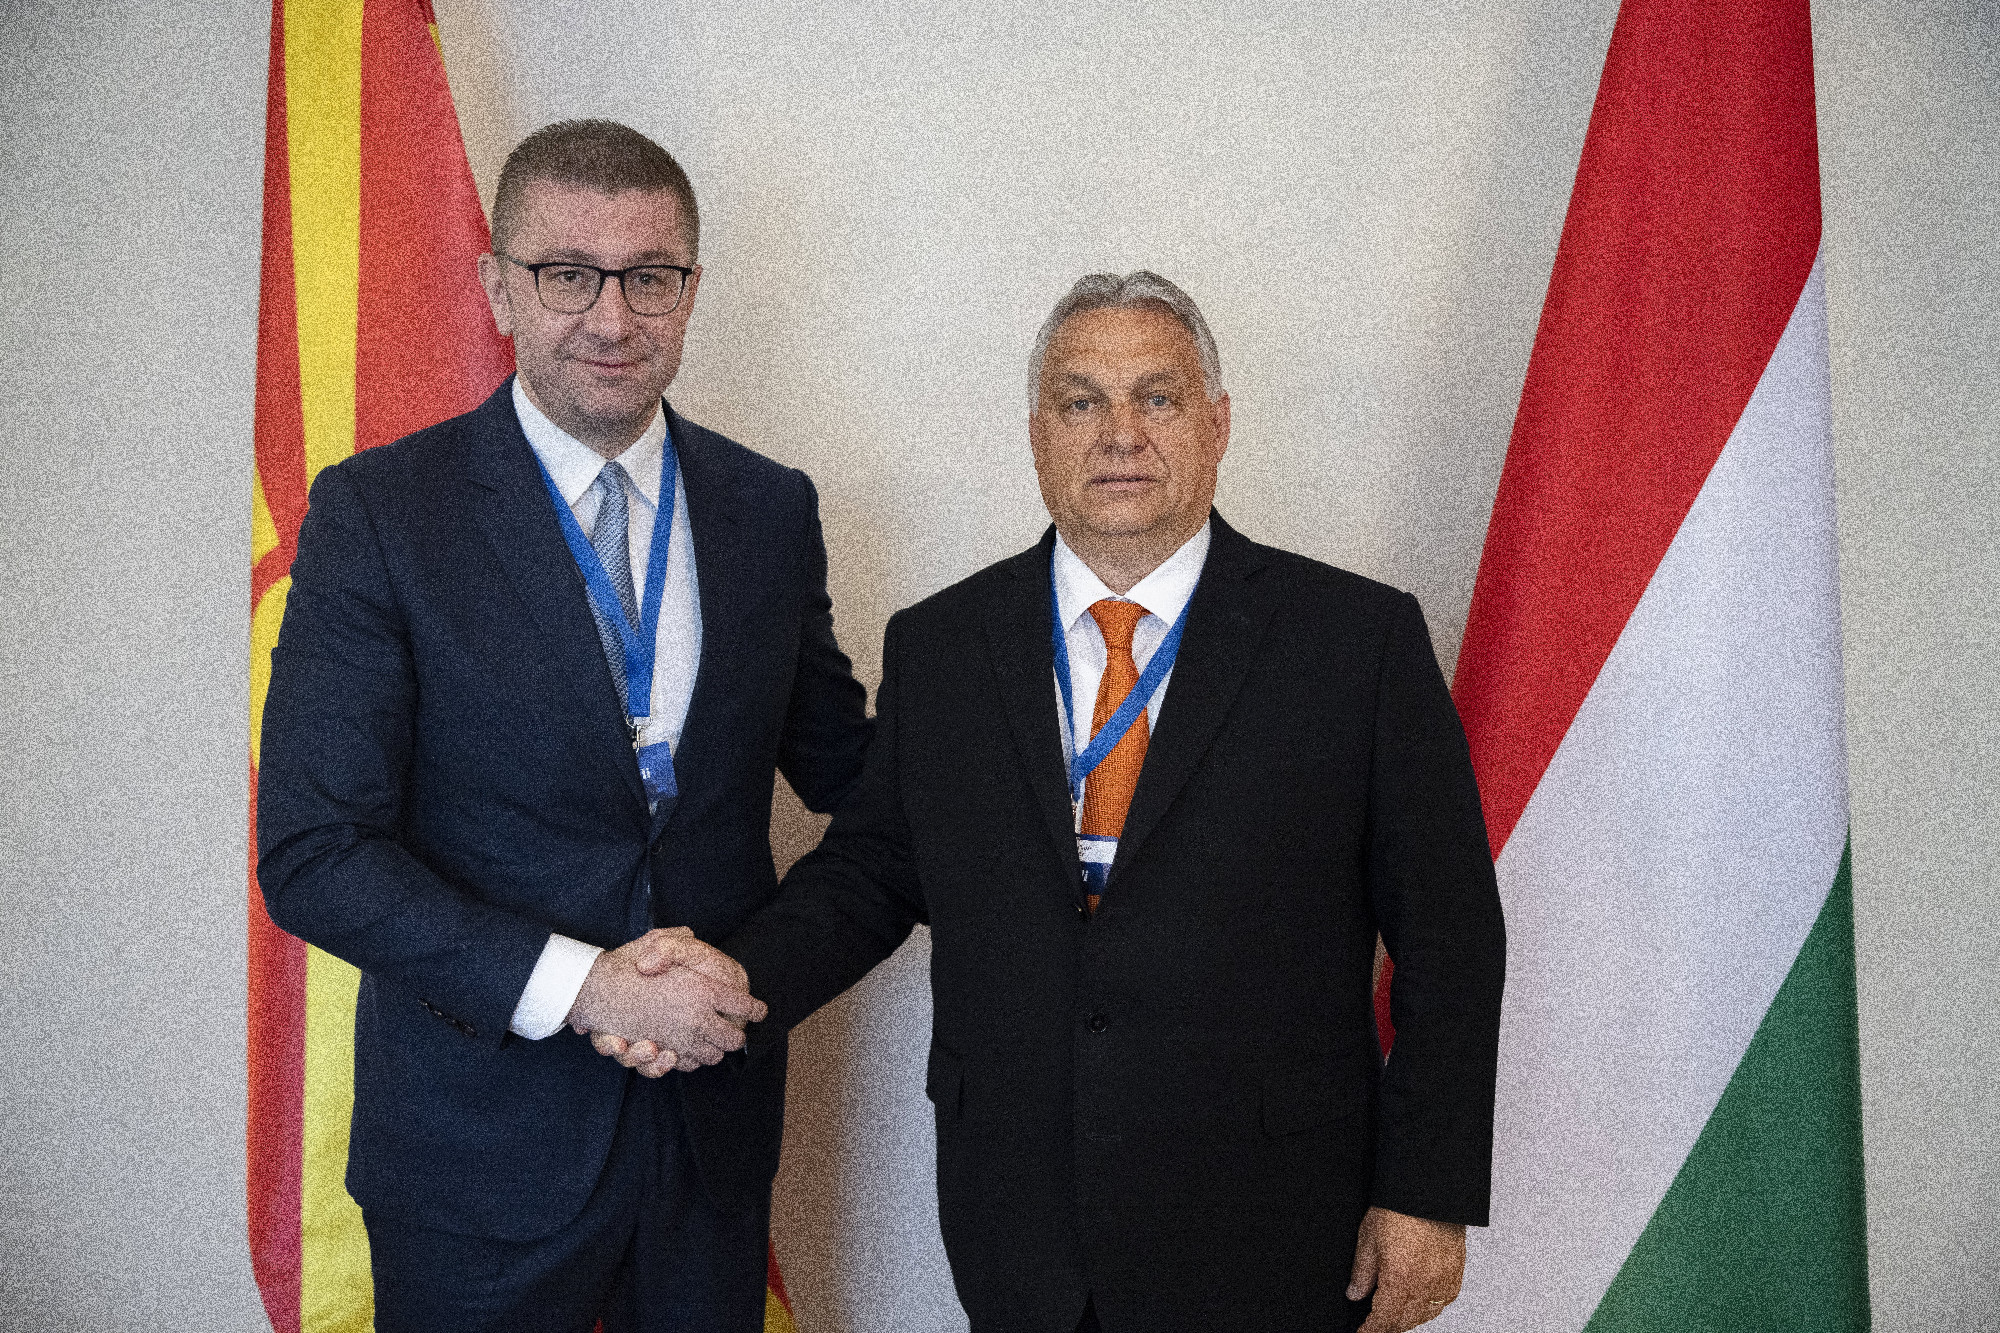 Orbán Viktor segítséget ígért a kormányzati felkészüléshez egy észak-macedón pártnak